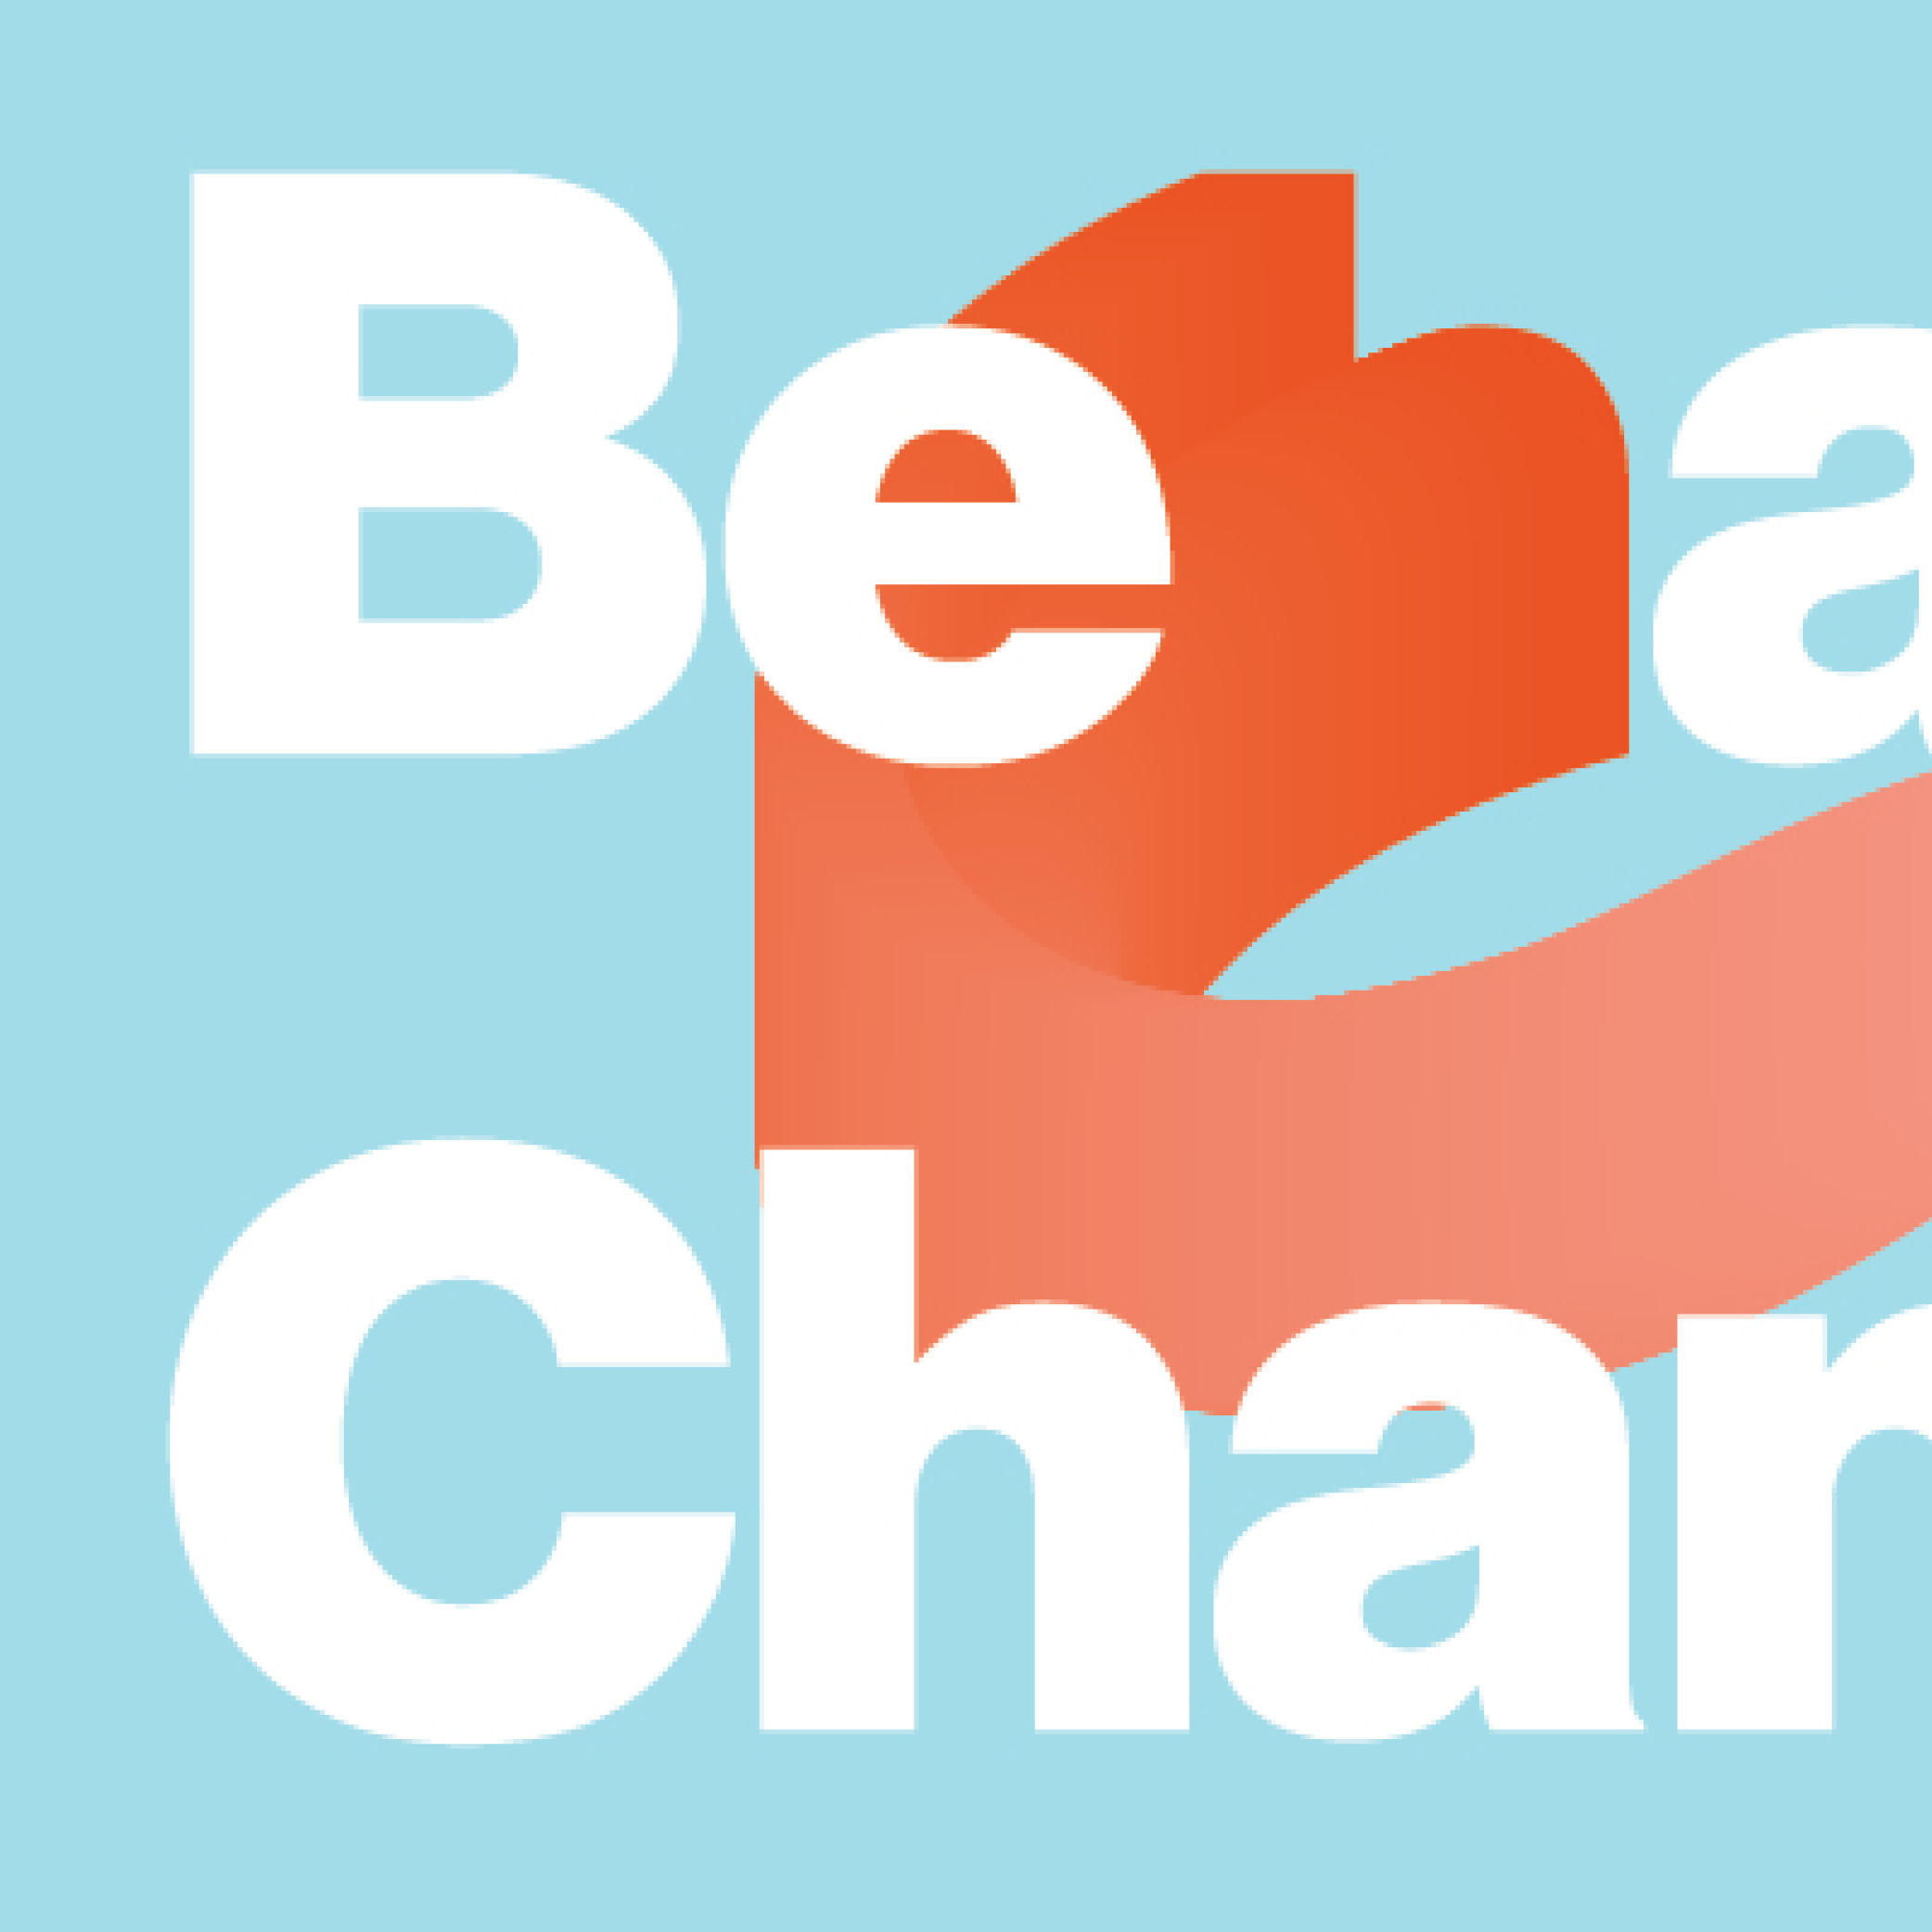 Behavior Change Workshop